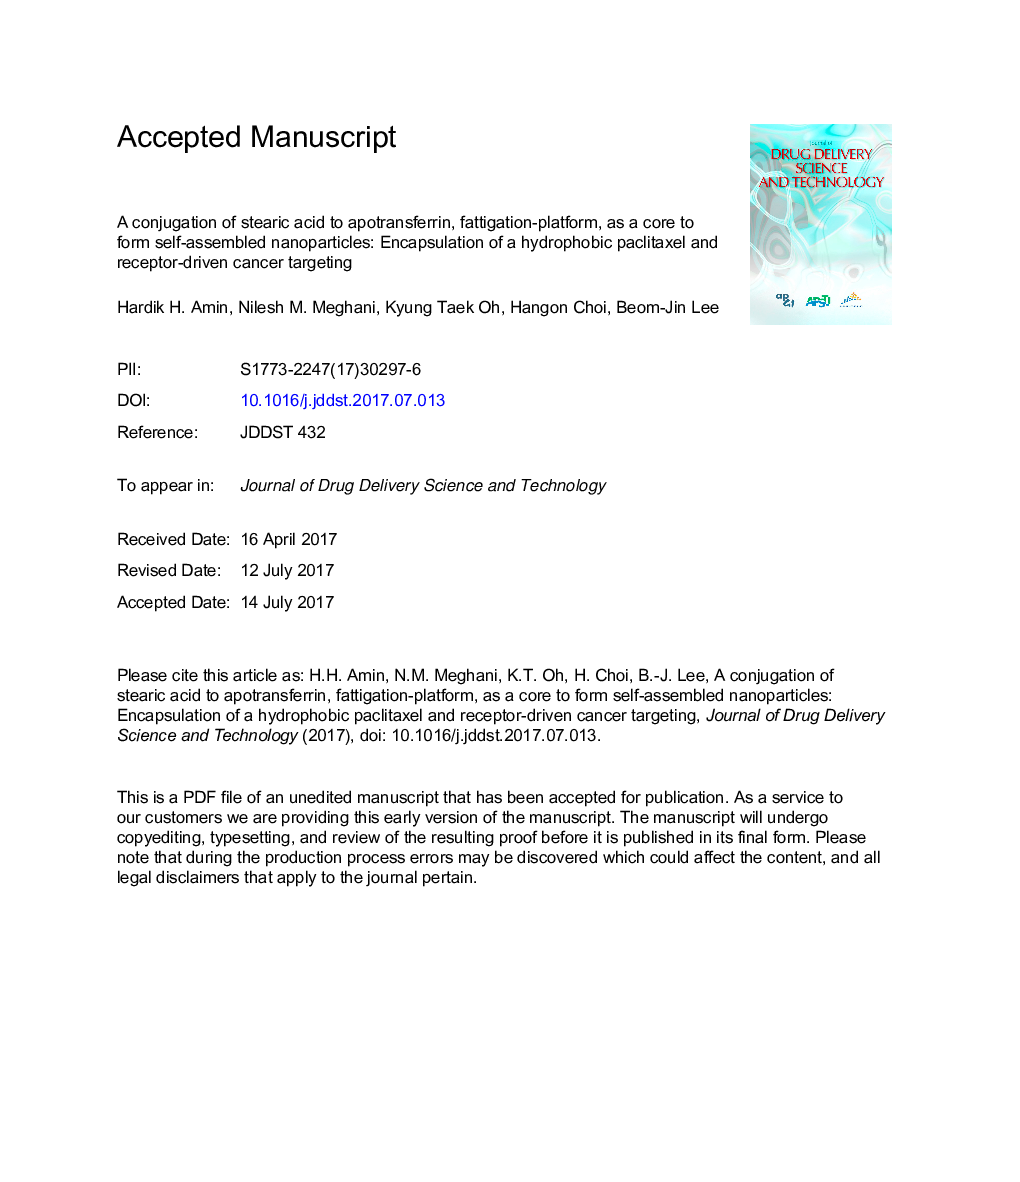 ترکیب کنسانتره اسید استاریک به آپوترانسفرستر، پلاتفرم چربی زدائی، به عنوان یک هسته برای تشکیل نانوذرات خودمختار: کپسوله سازی یک هدف سرطانی هضم کننده بسته لیتاکاکسل و گیرنده 